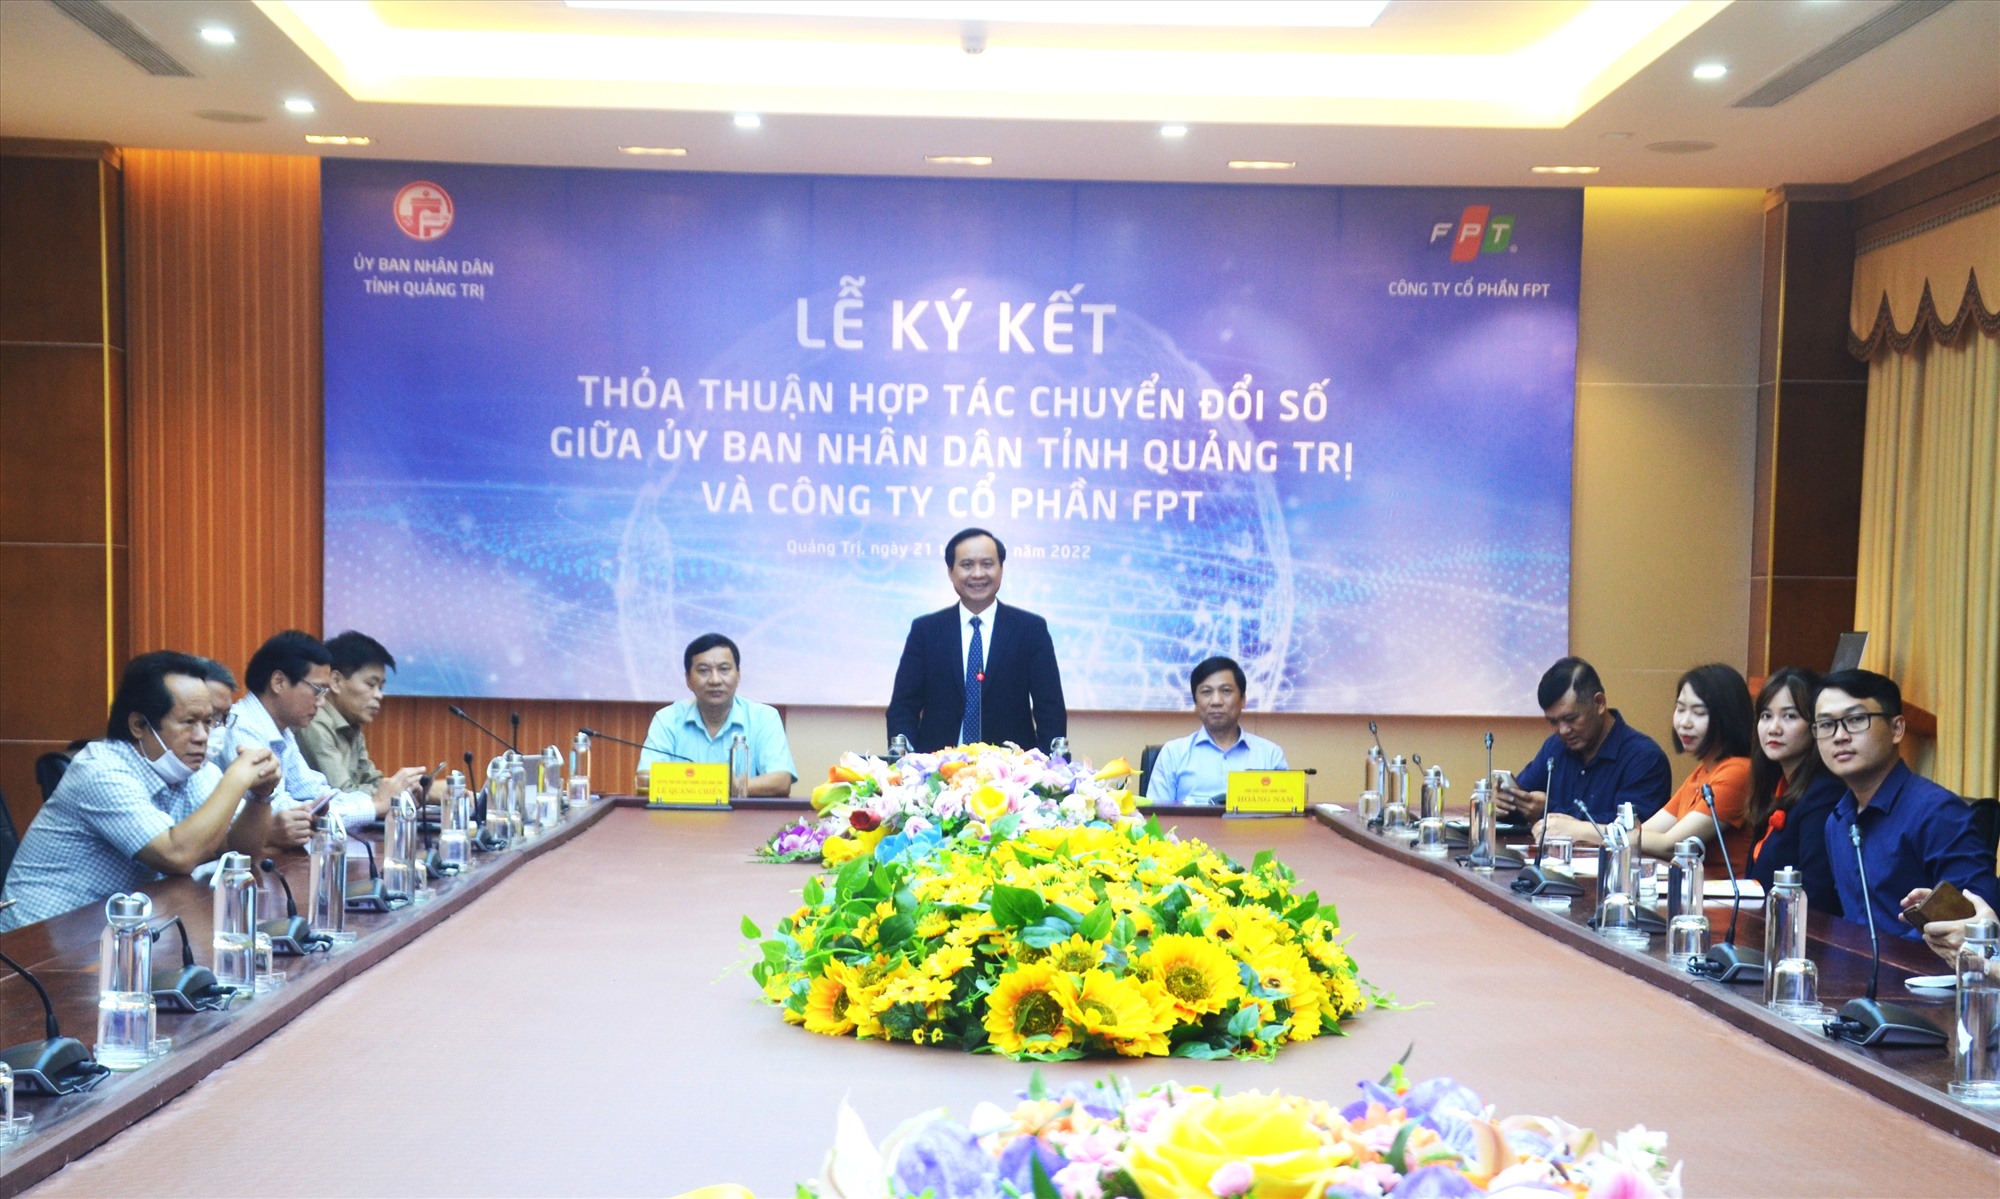 Chủ tịch UBND tỉnh Võ Văn Hưng phát biểu tại lễ ký kết thỏa thuận hợp tác chuyển đổi số đến năm 2025 - Ảnh: S.H